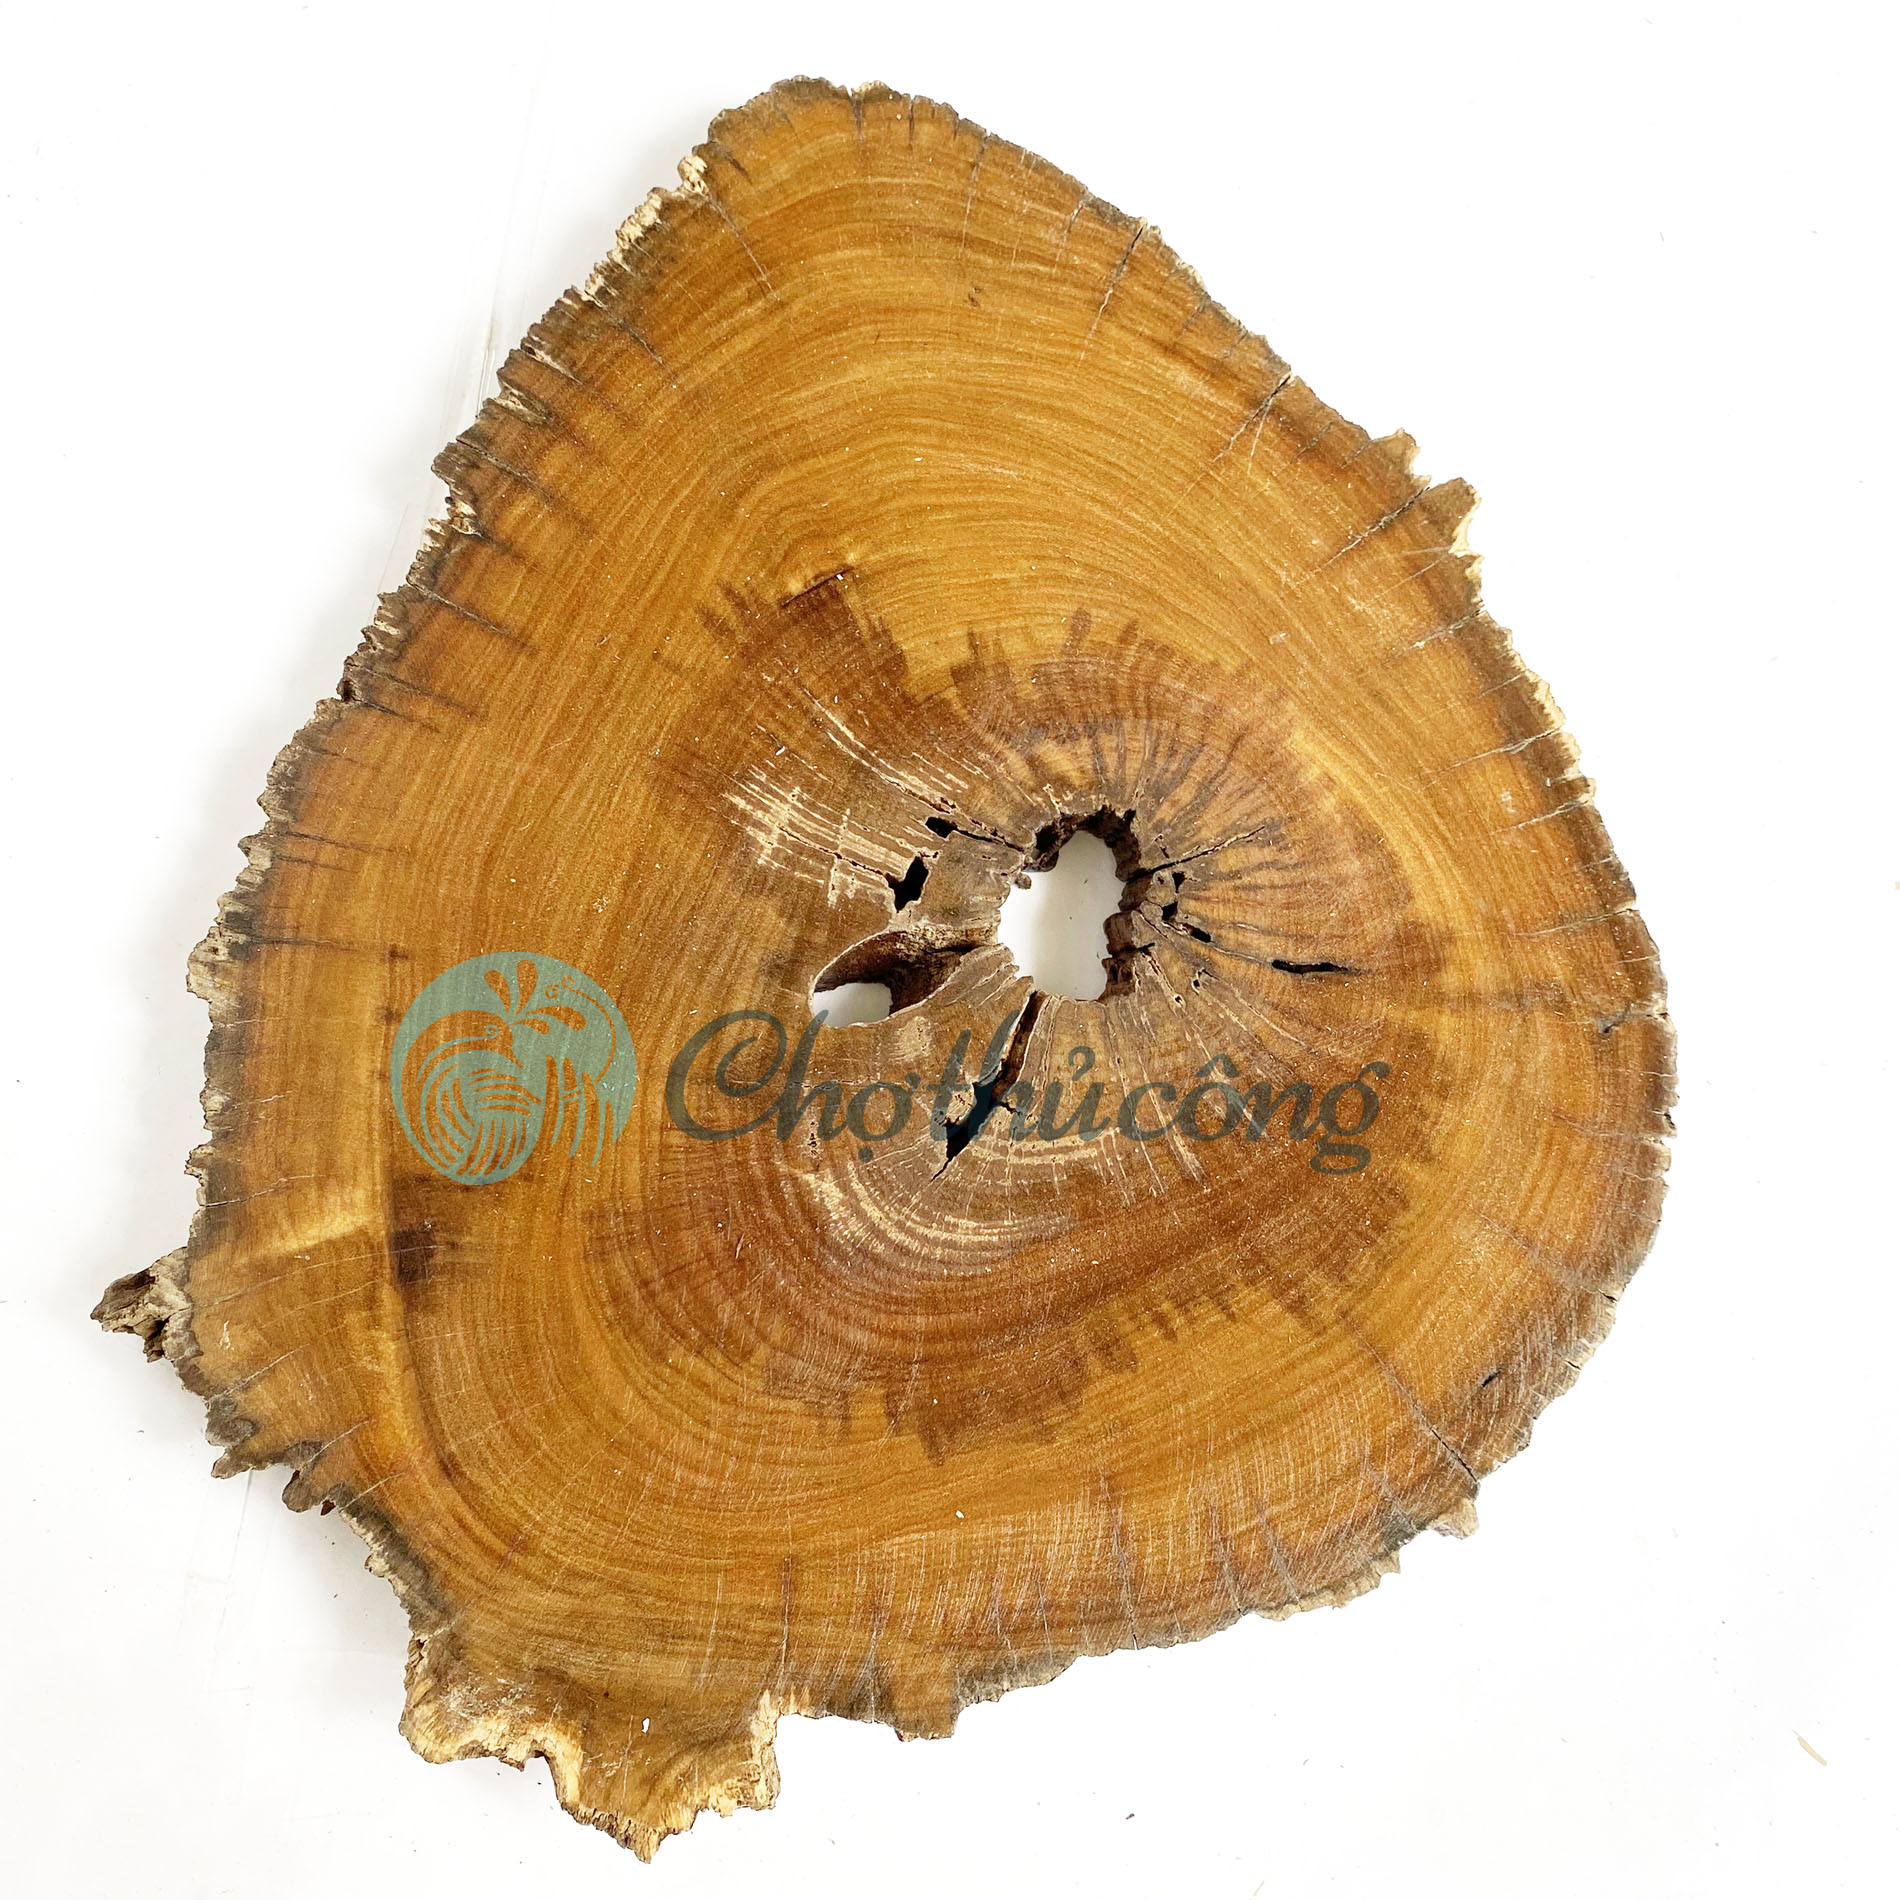 Khoanh gỗ tự nhiên lót chậu cây 20-25cm, lát gỗ lũa decor làm đế chậu cây, đế làm tháp bánh, đế gỗ kê tượng, miếng gỗ decor